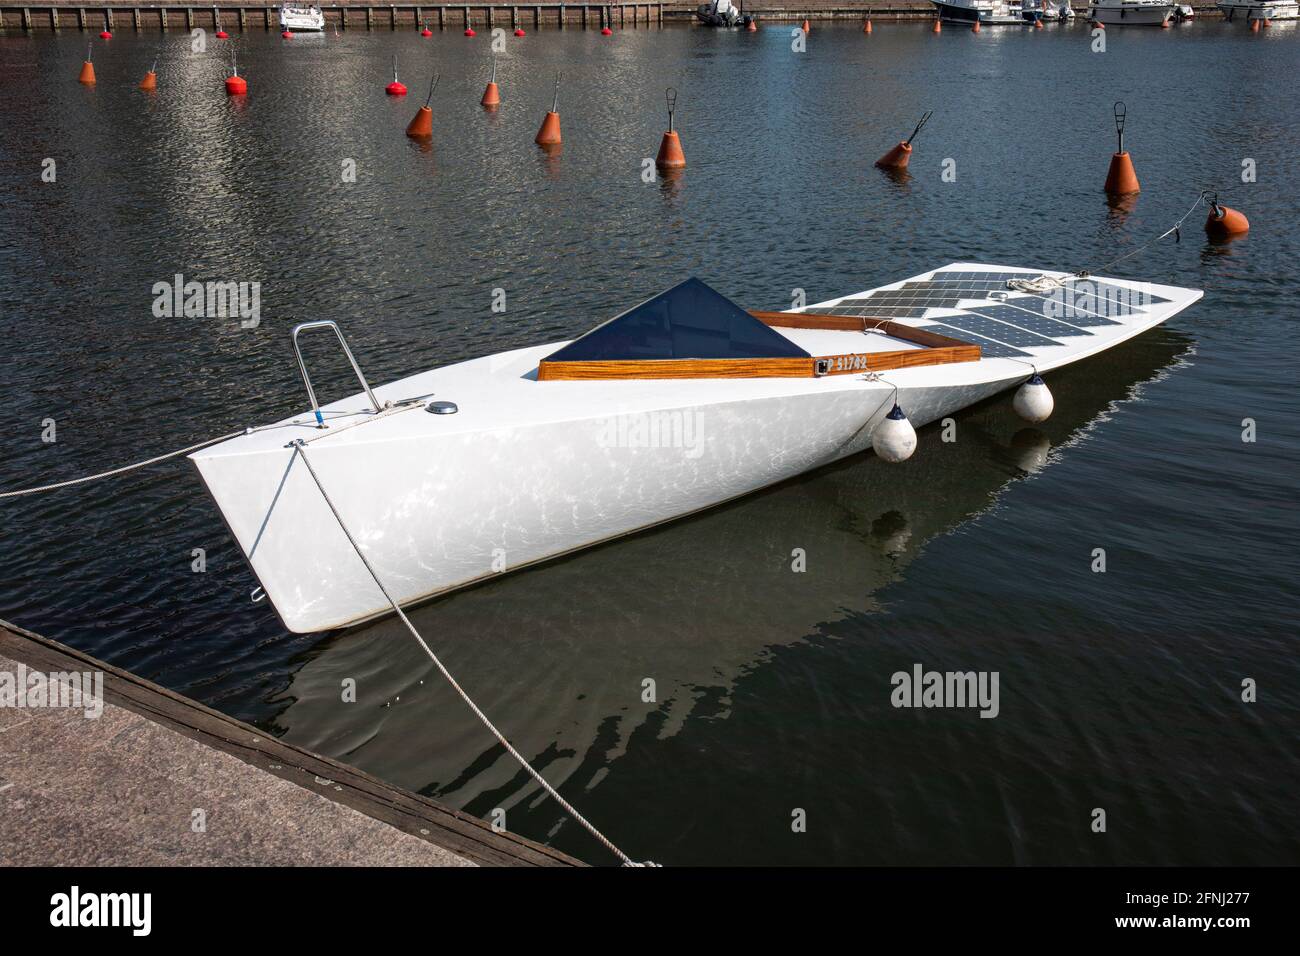 Solarbetriebenes Motorboot mit modernem Design im finnischen Stadtteil Hiealahti Stockfoto